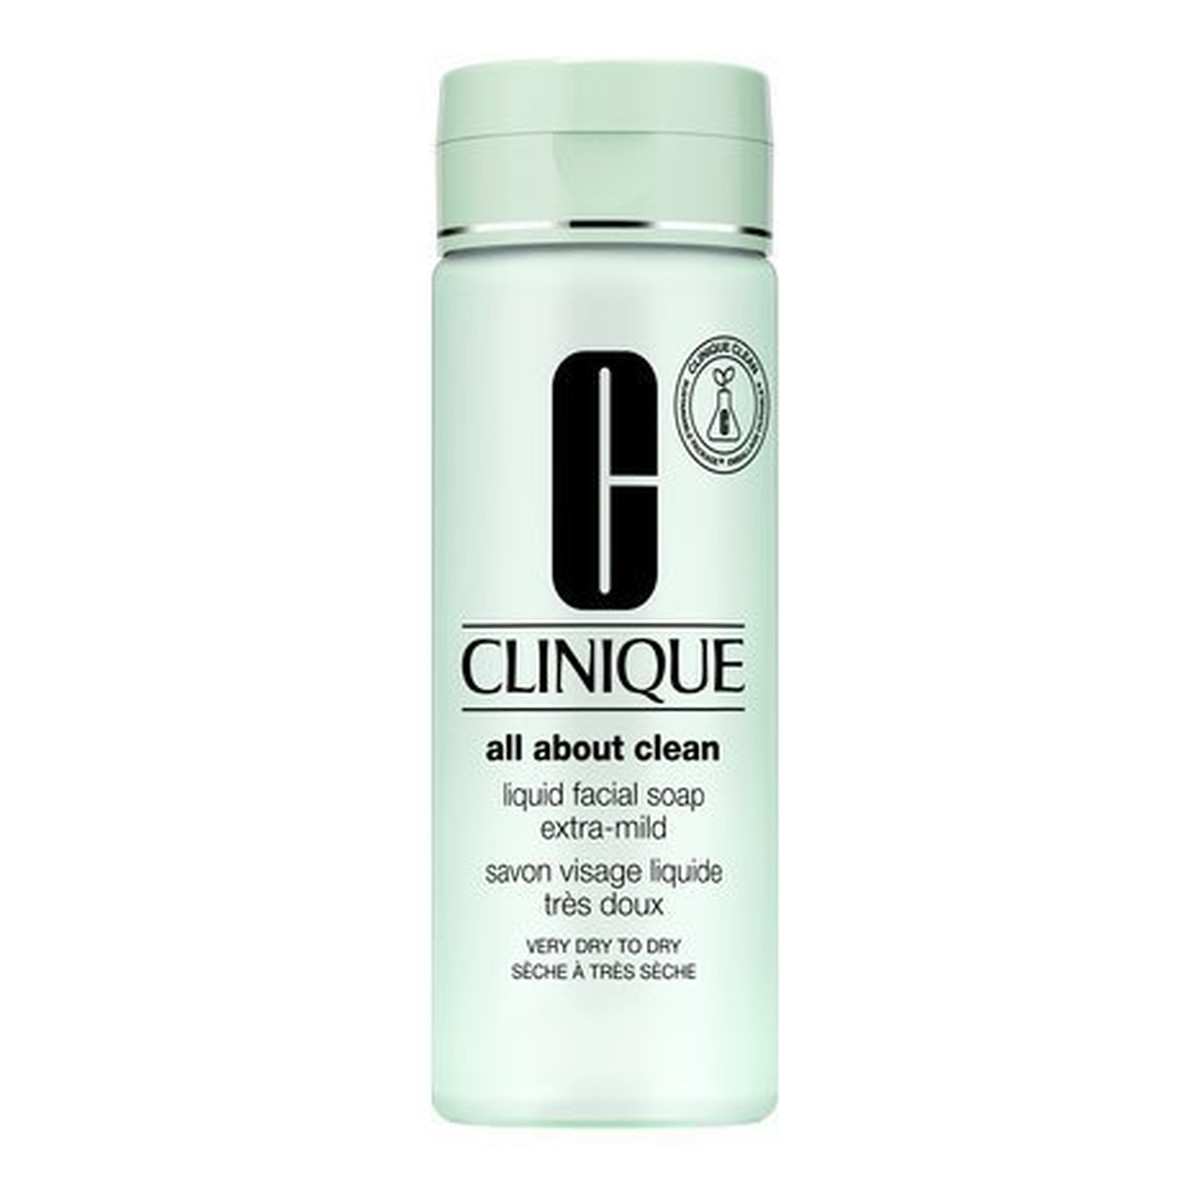 Clinique Liquid Facial Soap Extra-Mild Mydło w płynie do twarzy do skóry suchej i bardzo suchej 200ml